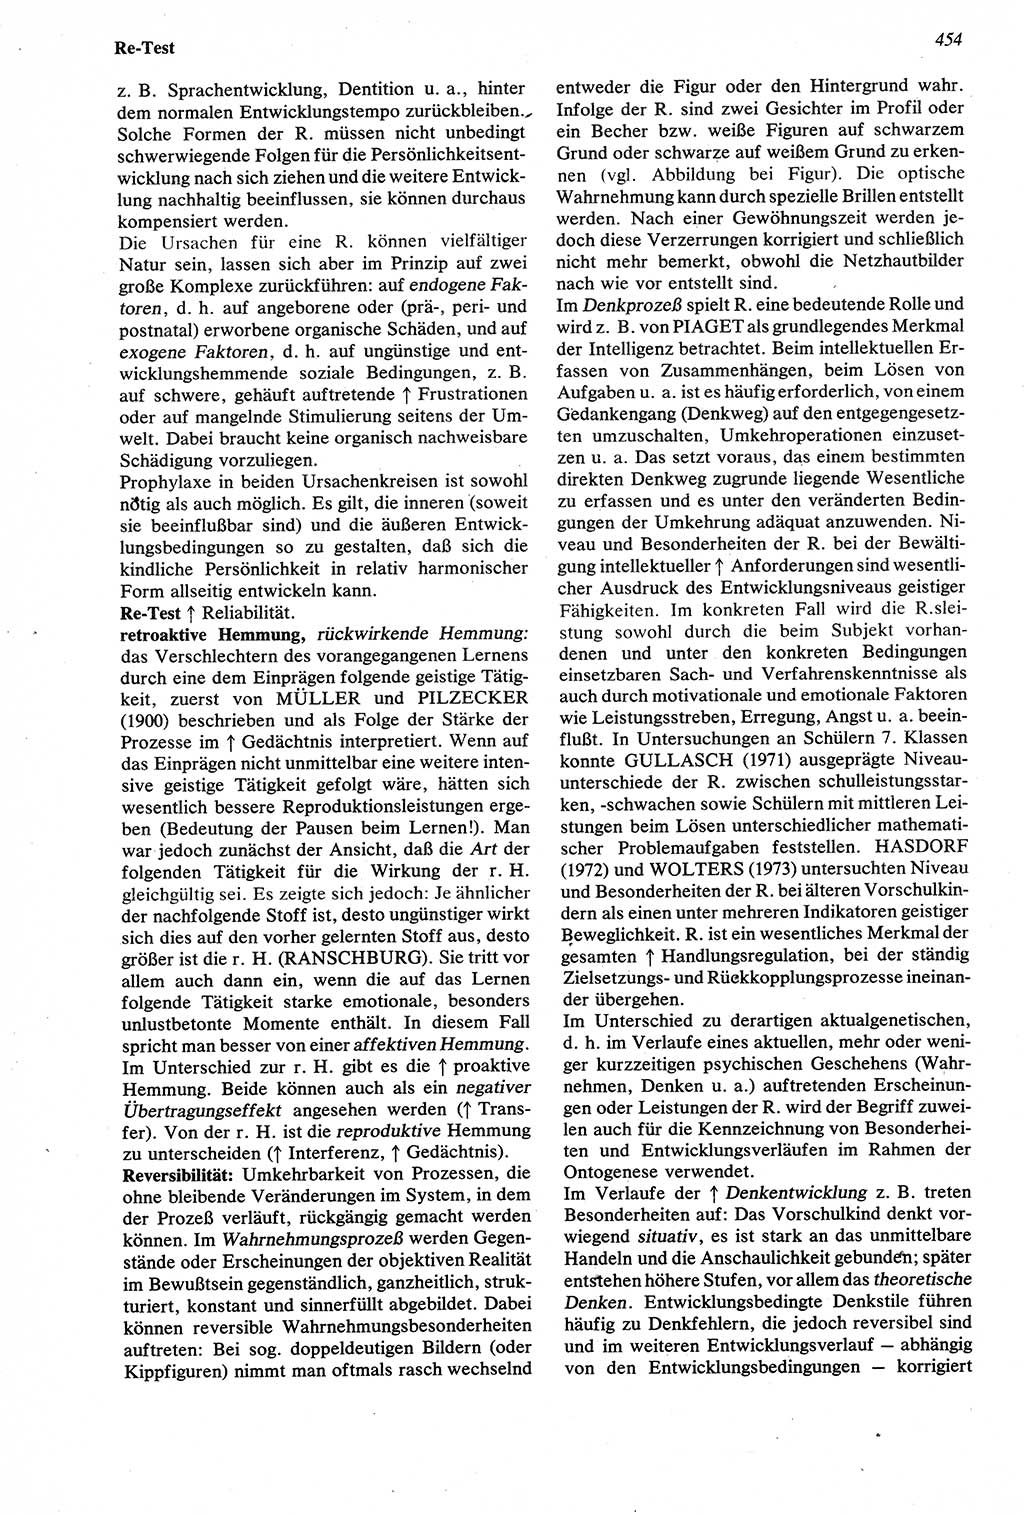 Wörterbuch der Psychologie [Deutsche Demokratische Republik (DDR)] 1976, Seite 454 (Wb. Psych. DDR 1976, S. 454)